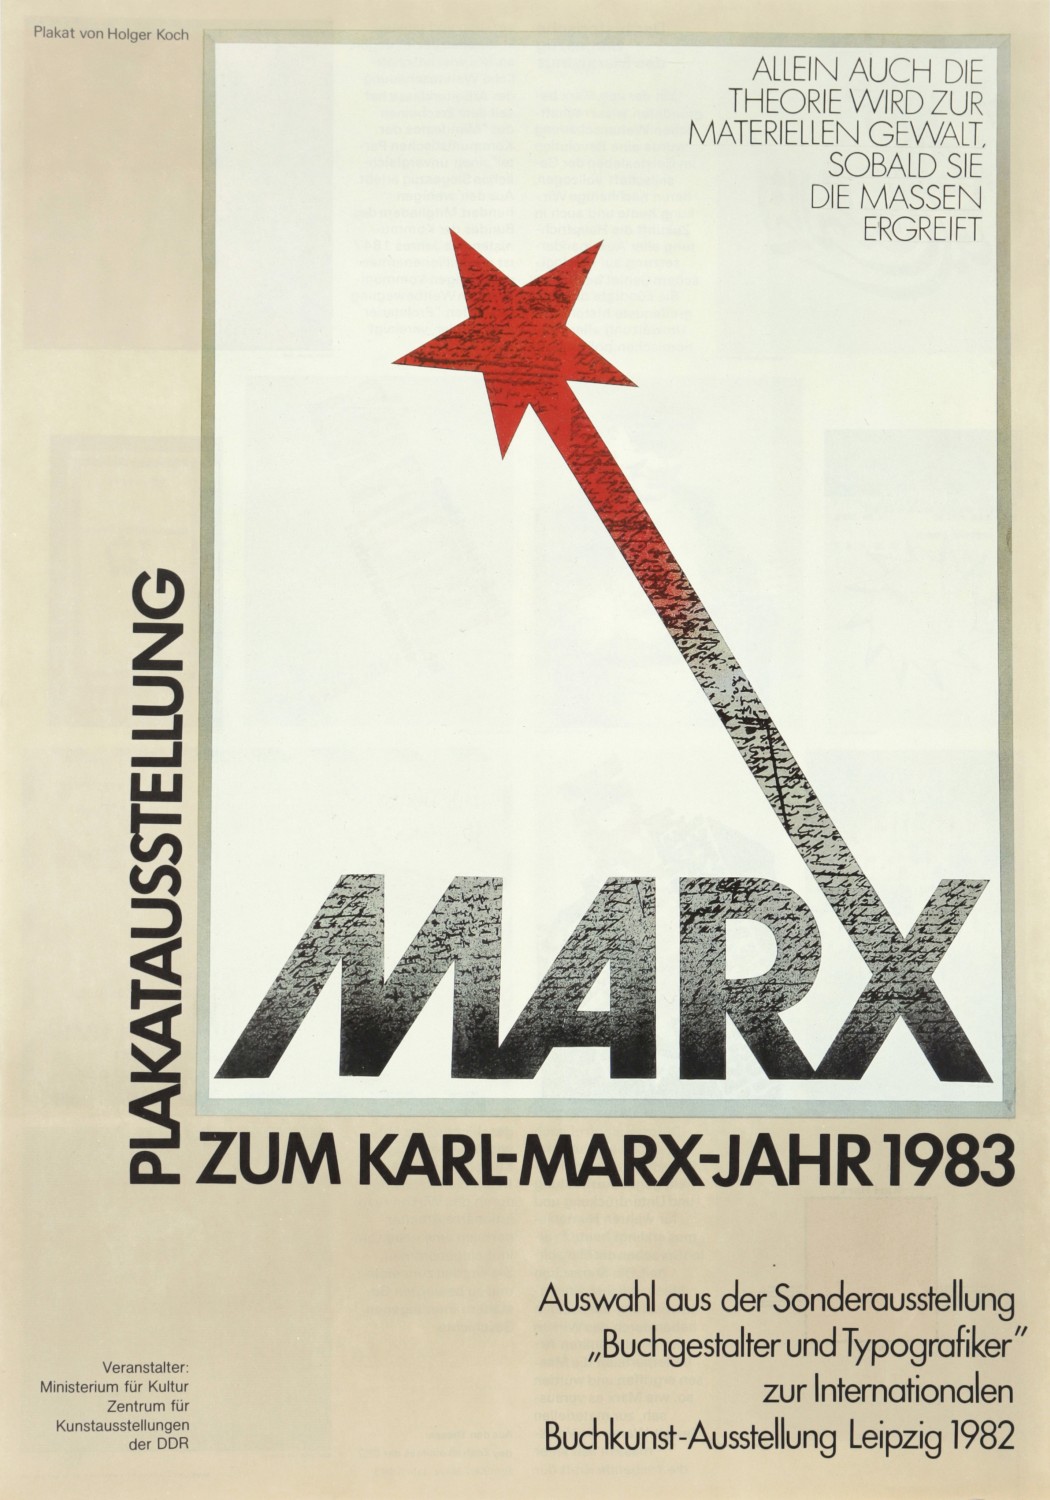 Holger Koch, Plakatausstellung zum Karl-Marx-Jahr 1983 - Allein auch die Theorie wird zur materiellen Gewalt, sobald sie die Massen ergreift